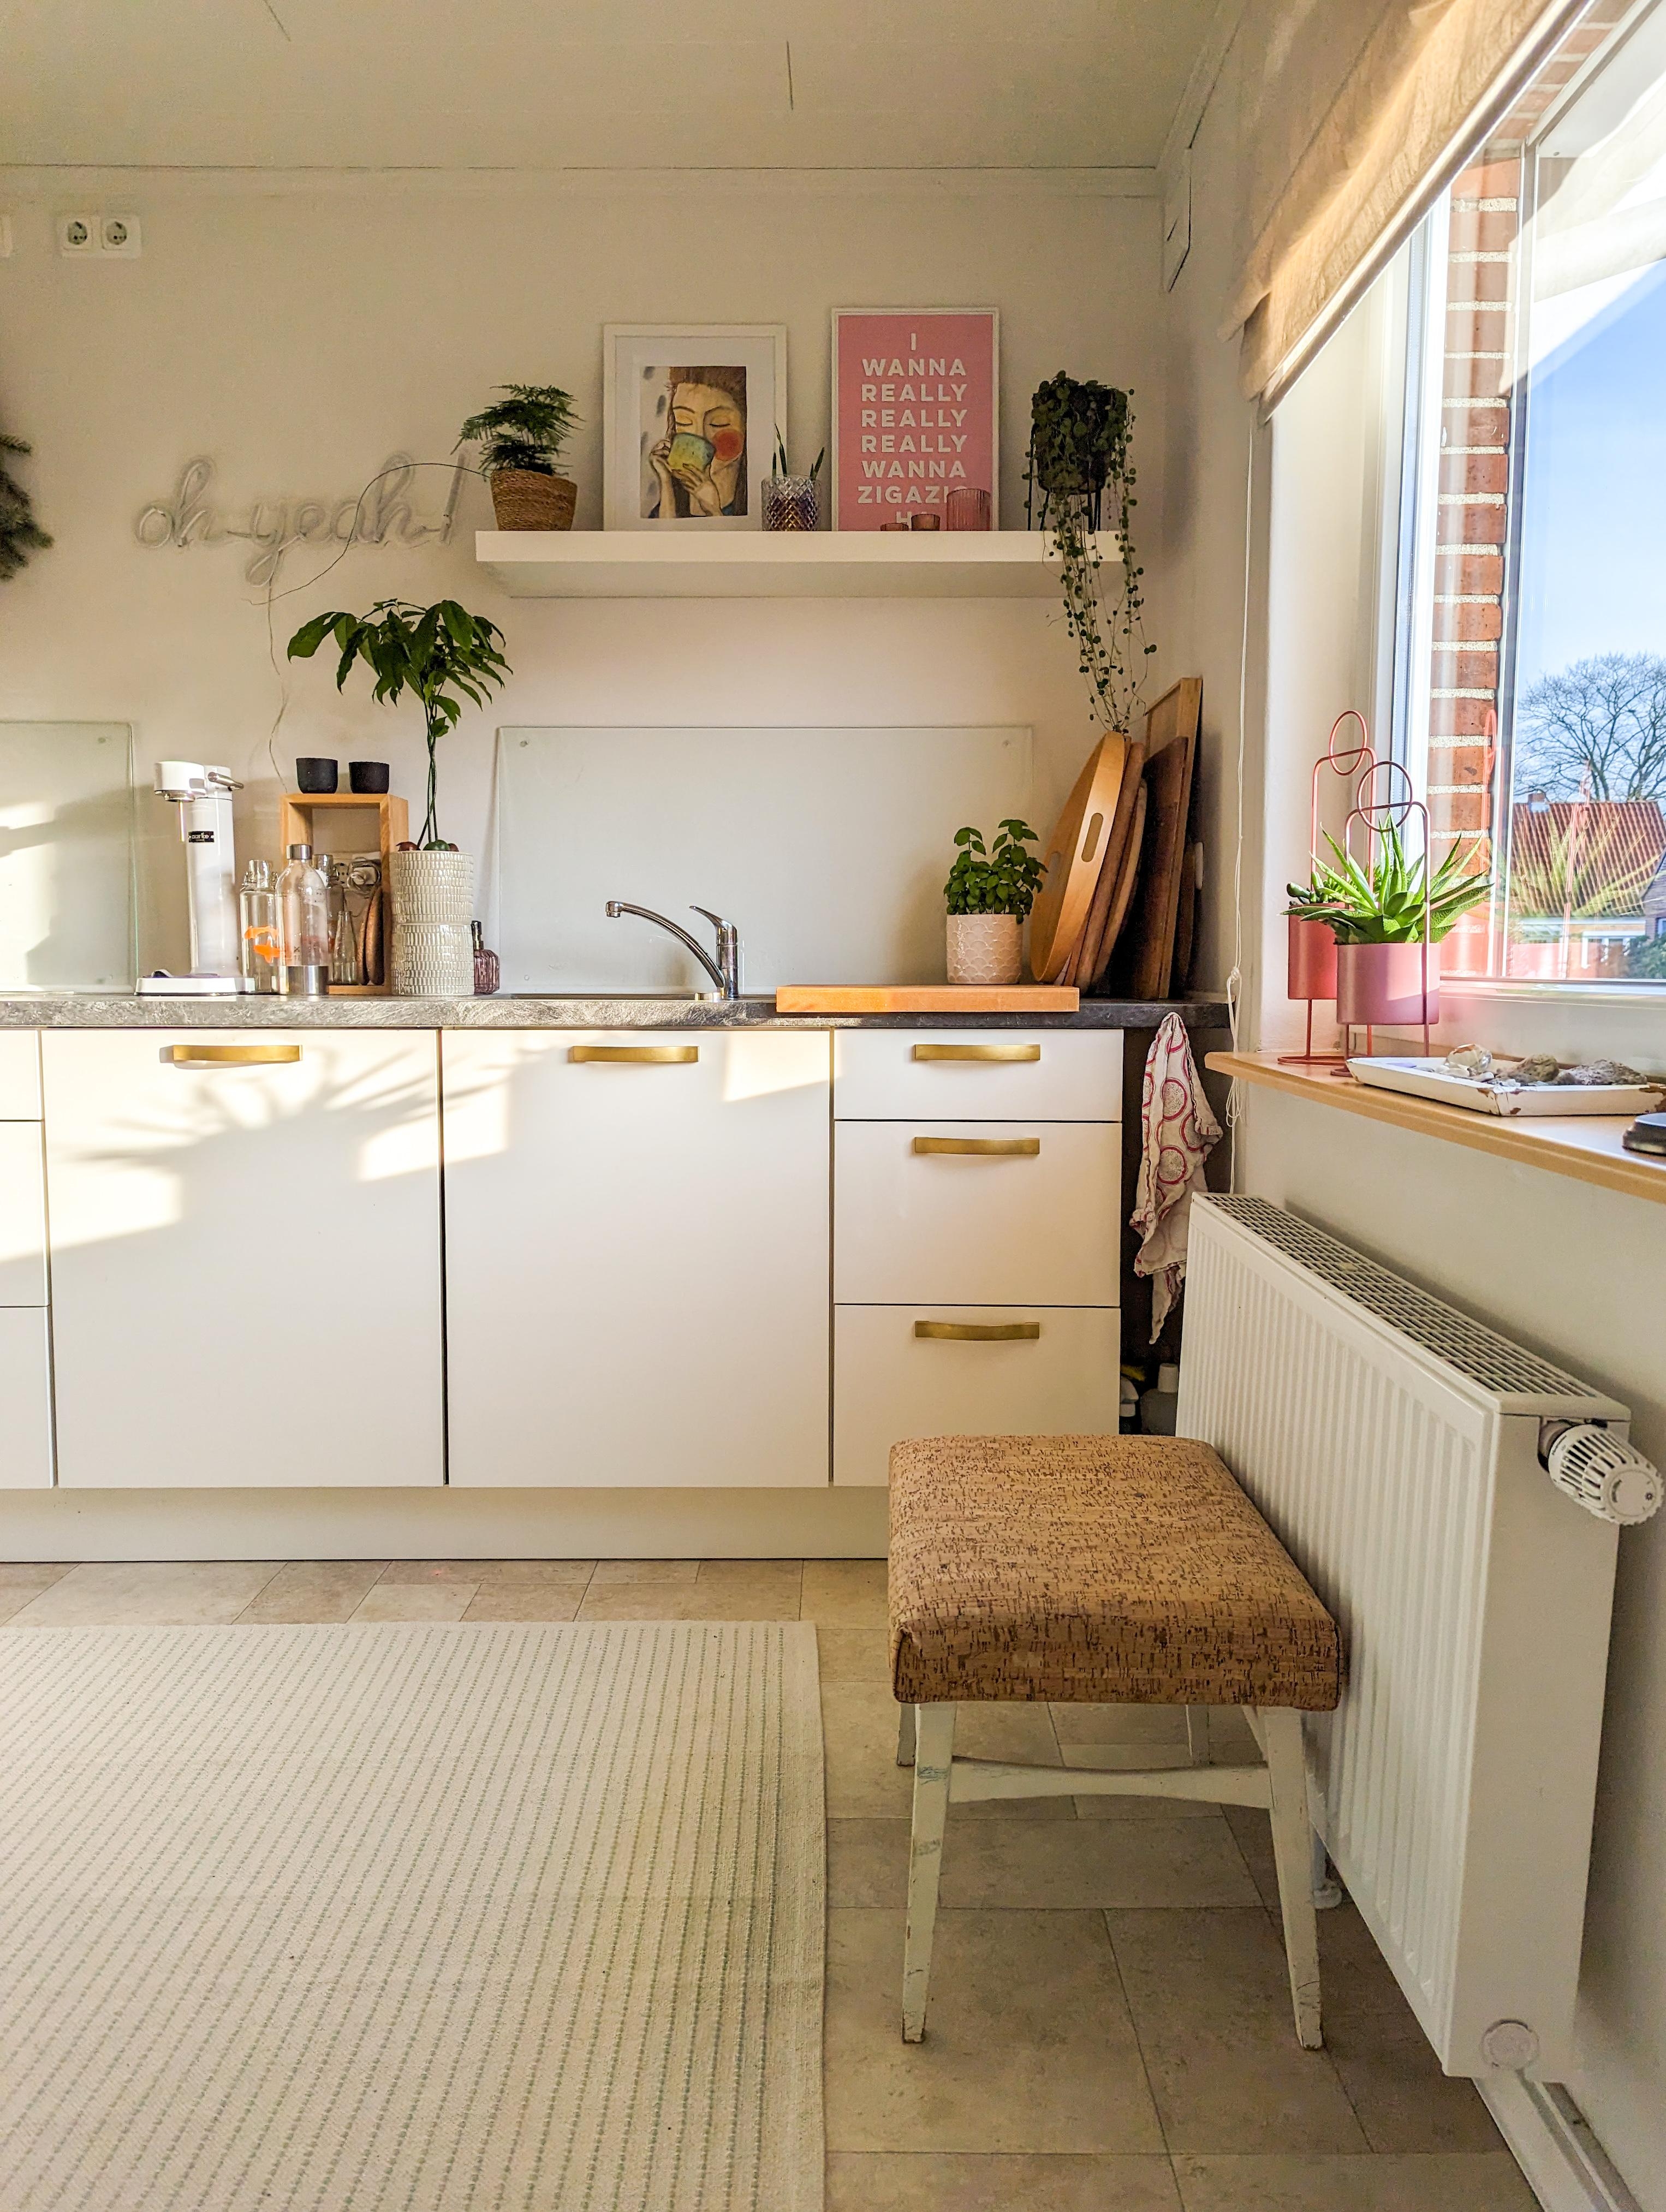 Hurra - Sonne scheint


#küche #kitchen #einrichtung
#sonnenschein #altbau #renovieren 